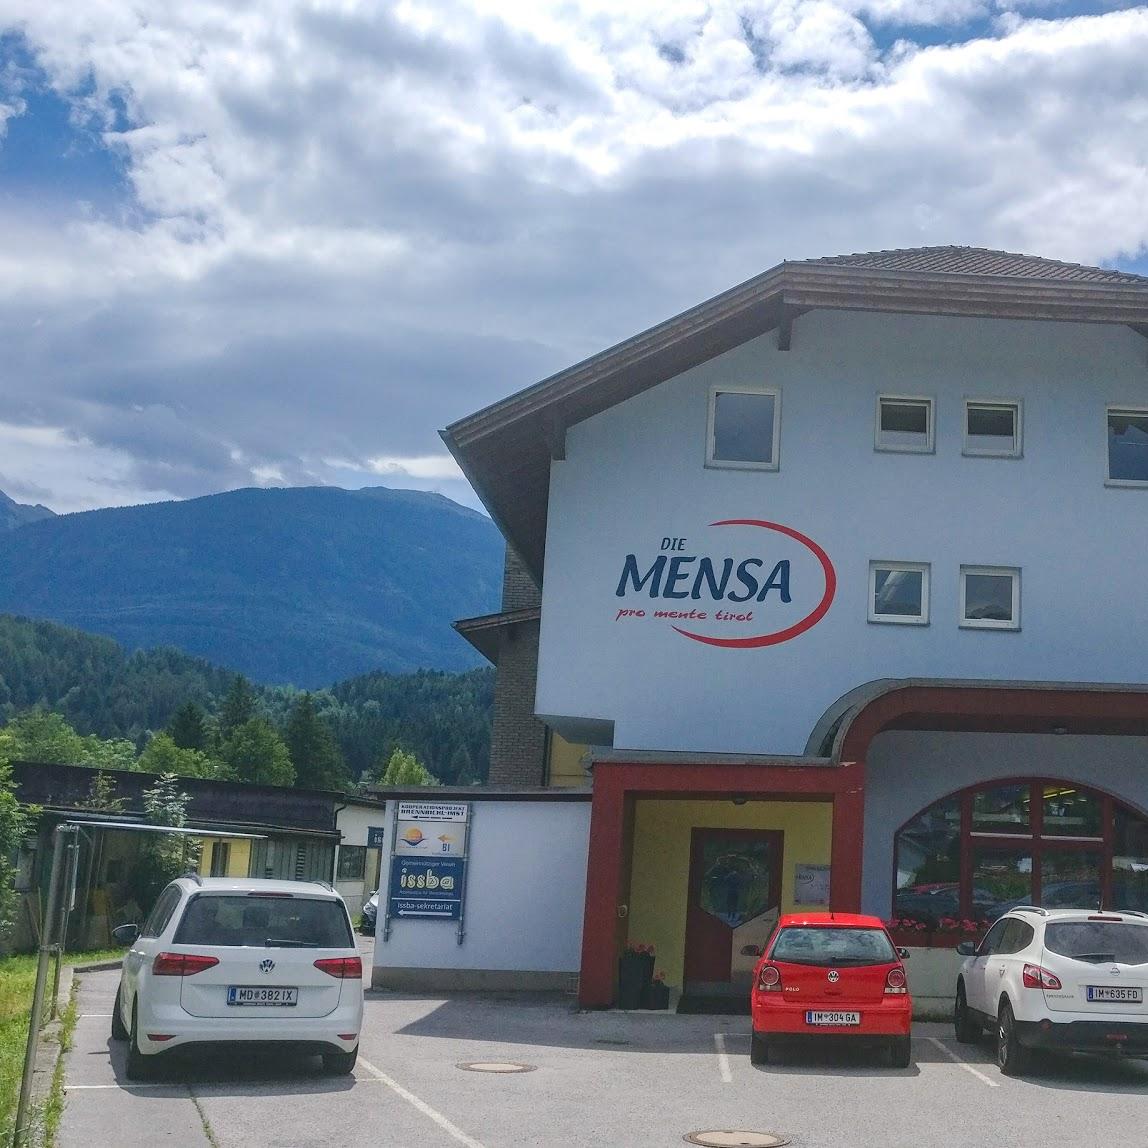 Restaurant "Die Mensa - Restaurant" in Gemeinde Imst